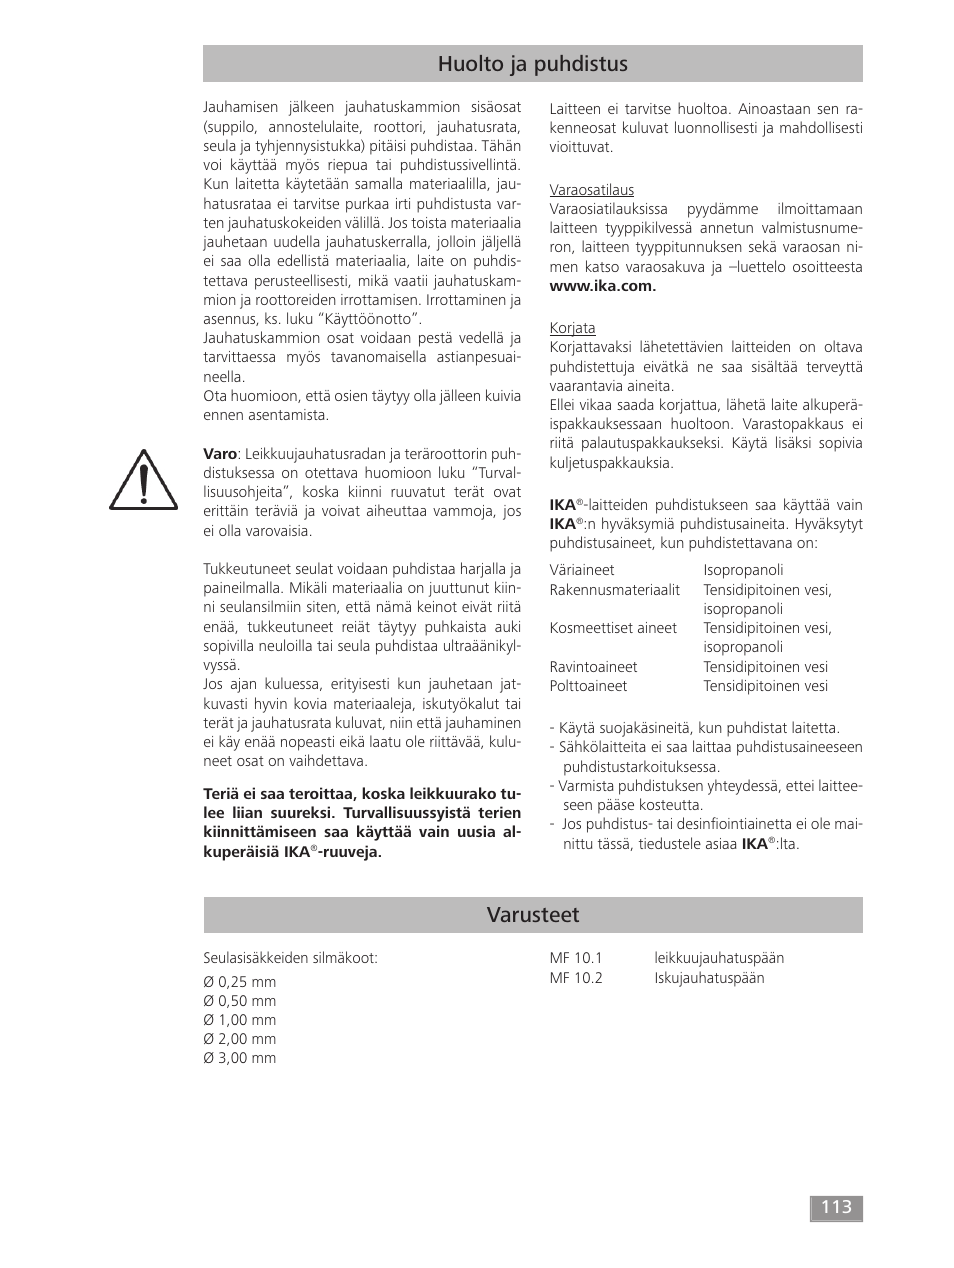 Varusteet, Huolto ja puhdistus | IKA MF 10 basic User Manual | Page 113 / 140